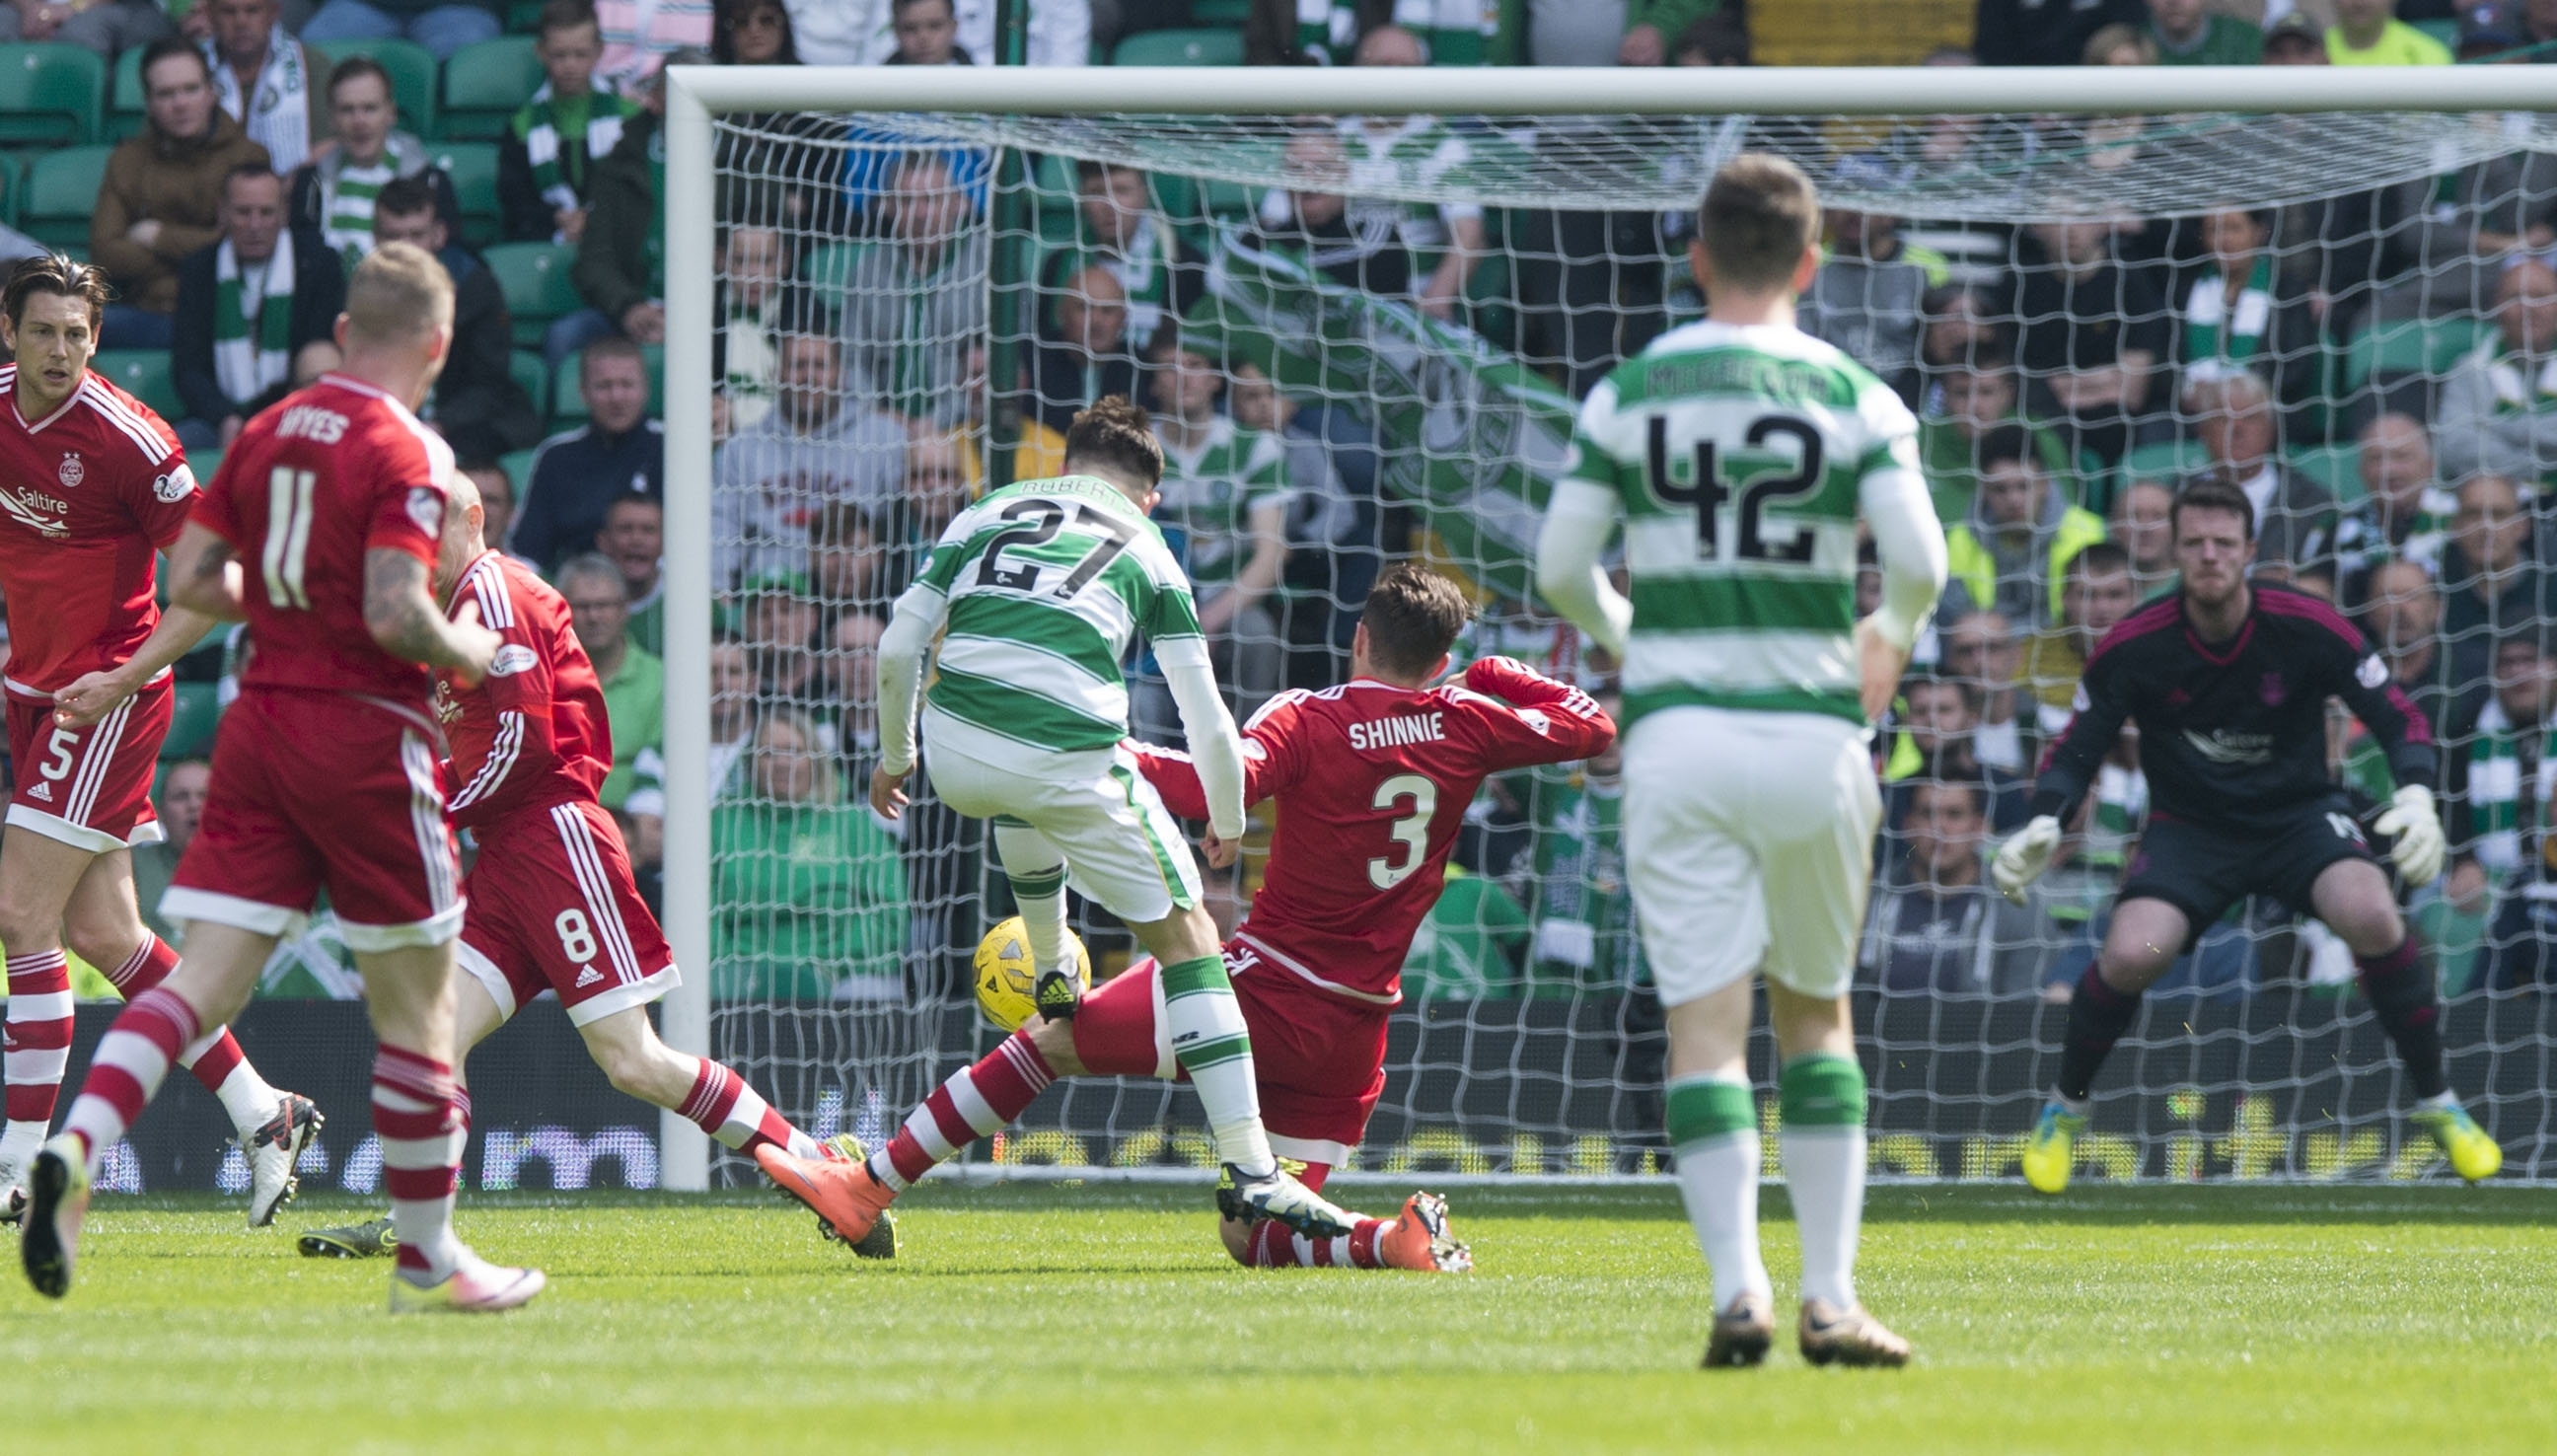 Celtic's Partick Roberts makes it 1-0.